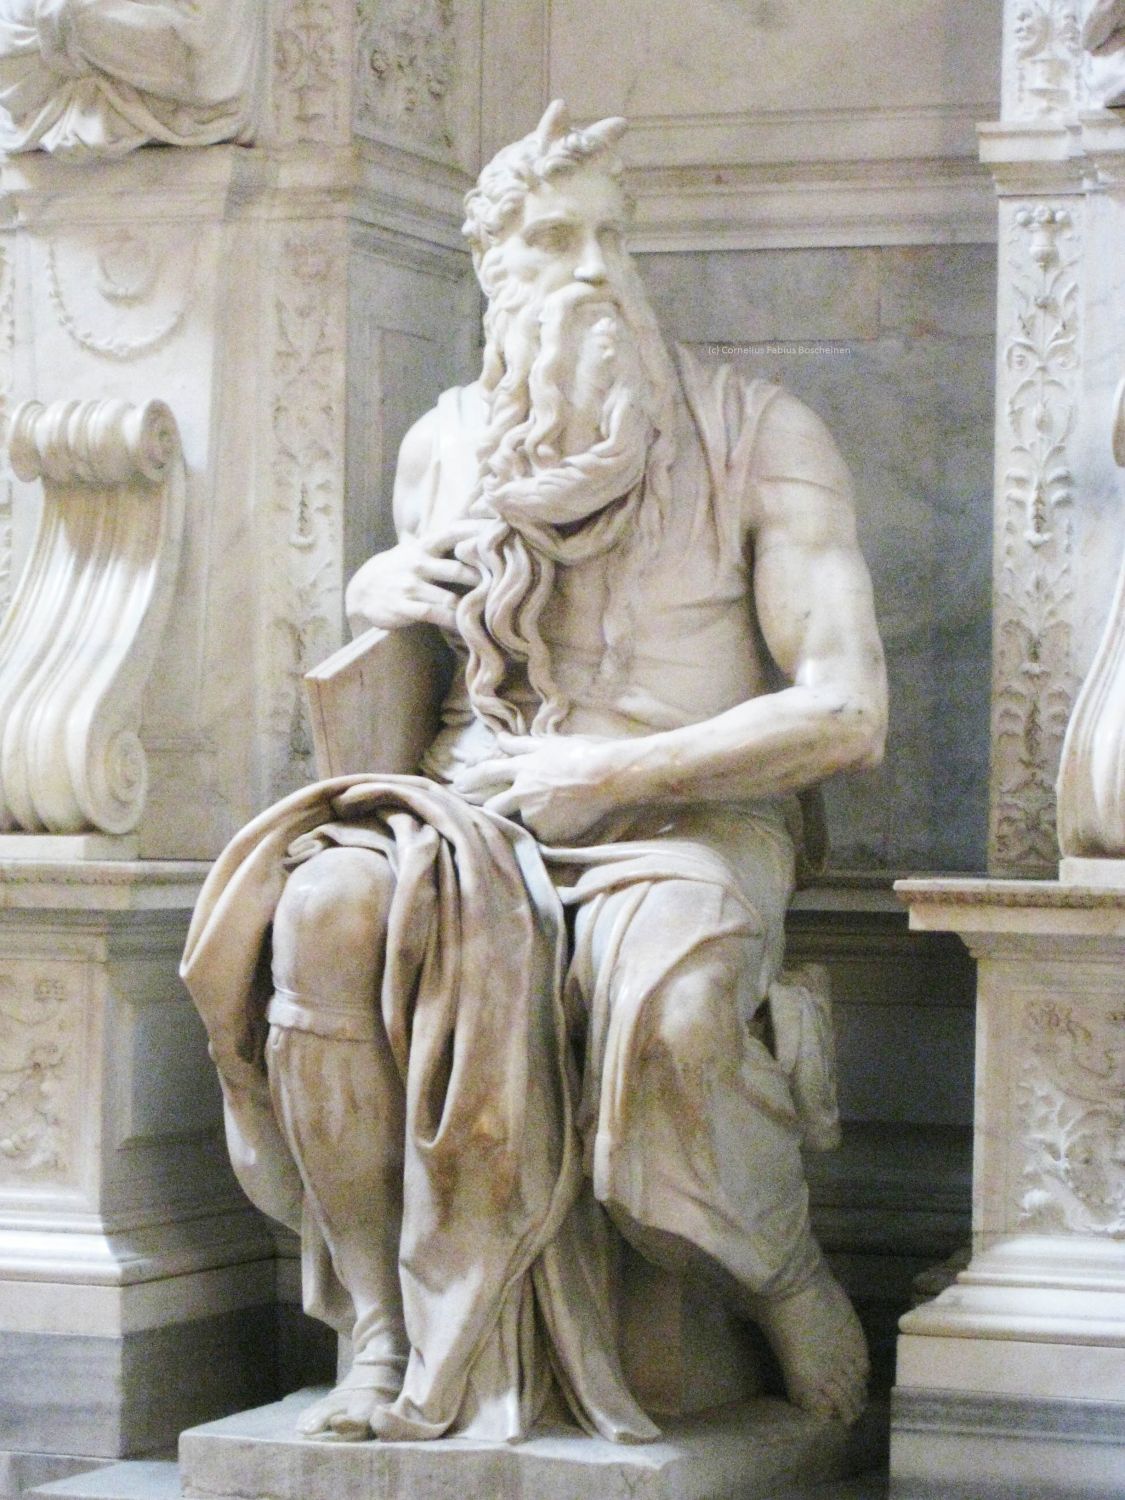 Der Moses des großen bildnerischen Schöpfers Michelangelo Buonarroti